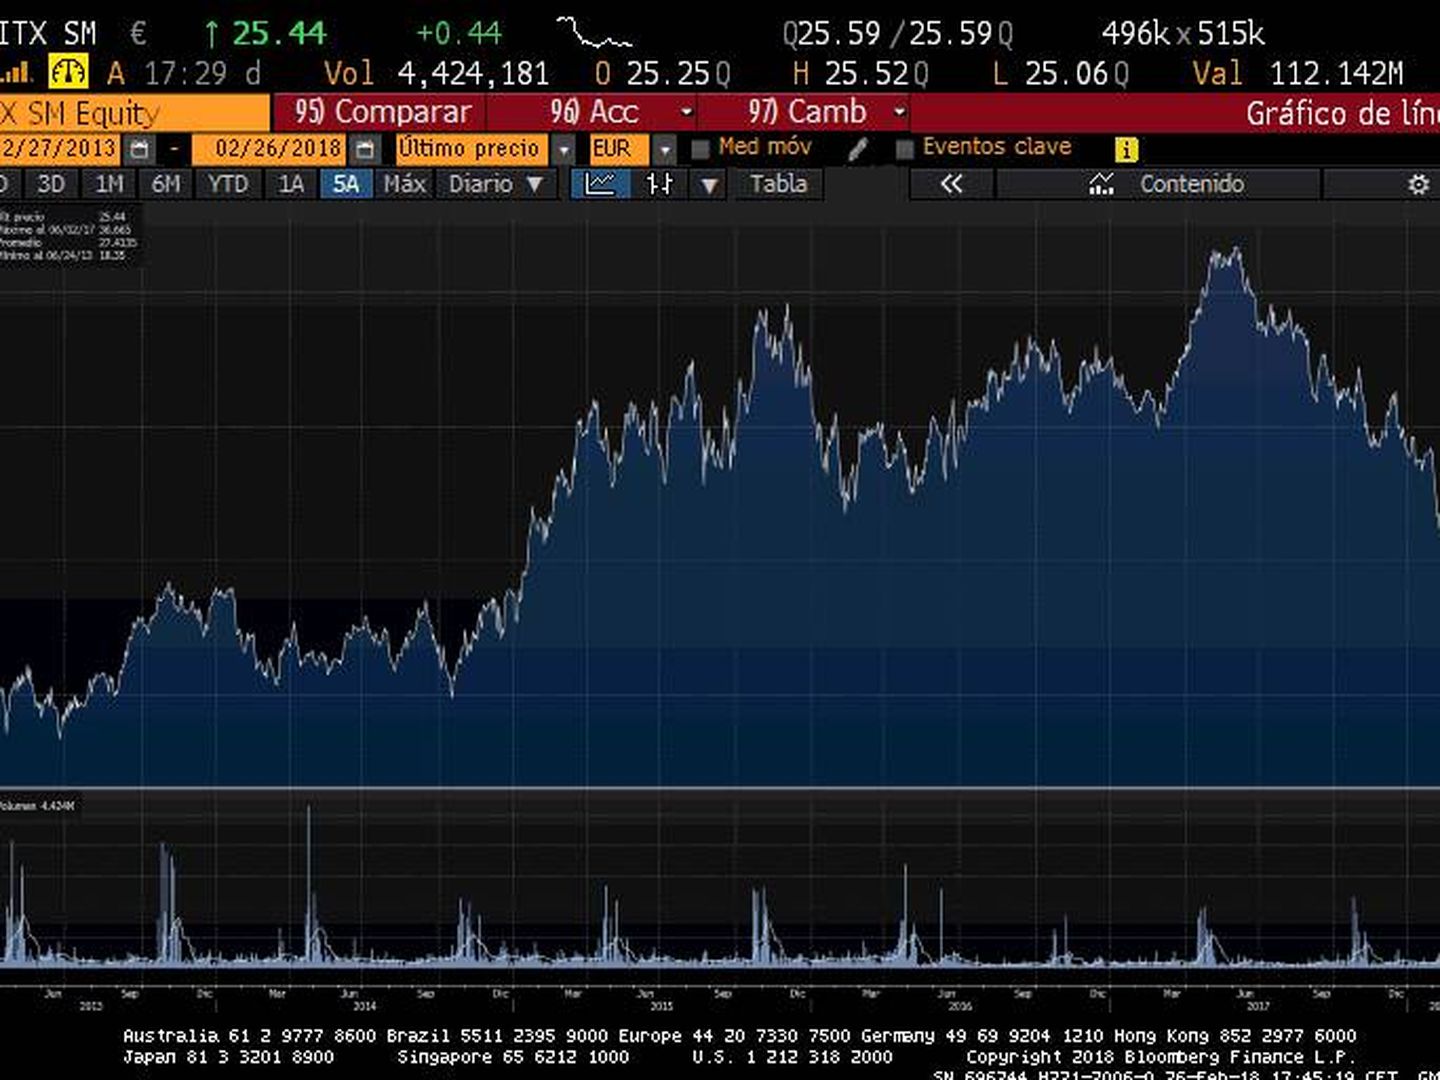 Gráfico de Inditex en Bloomberg